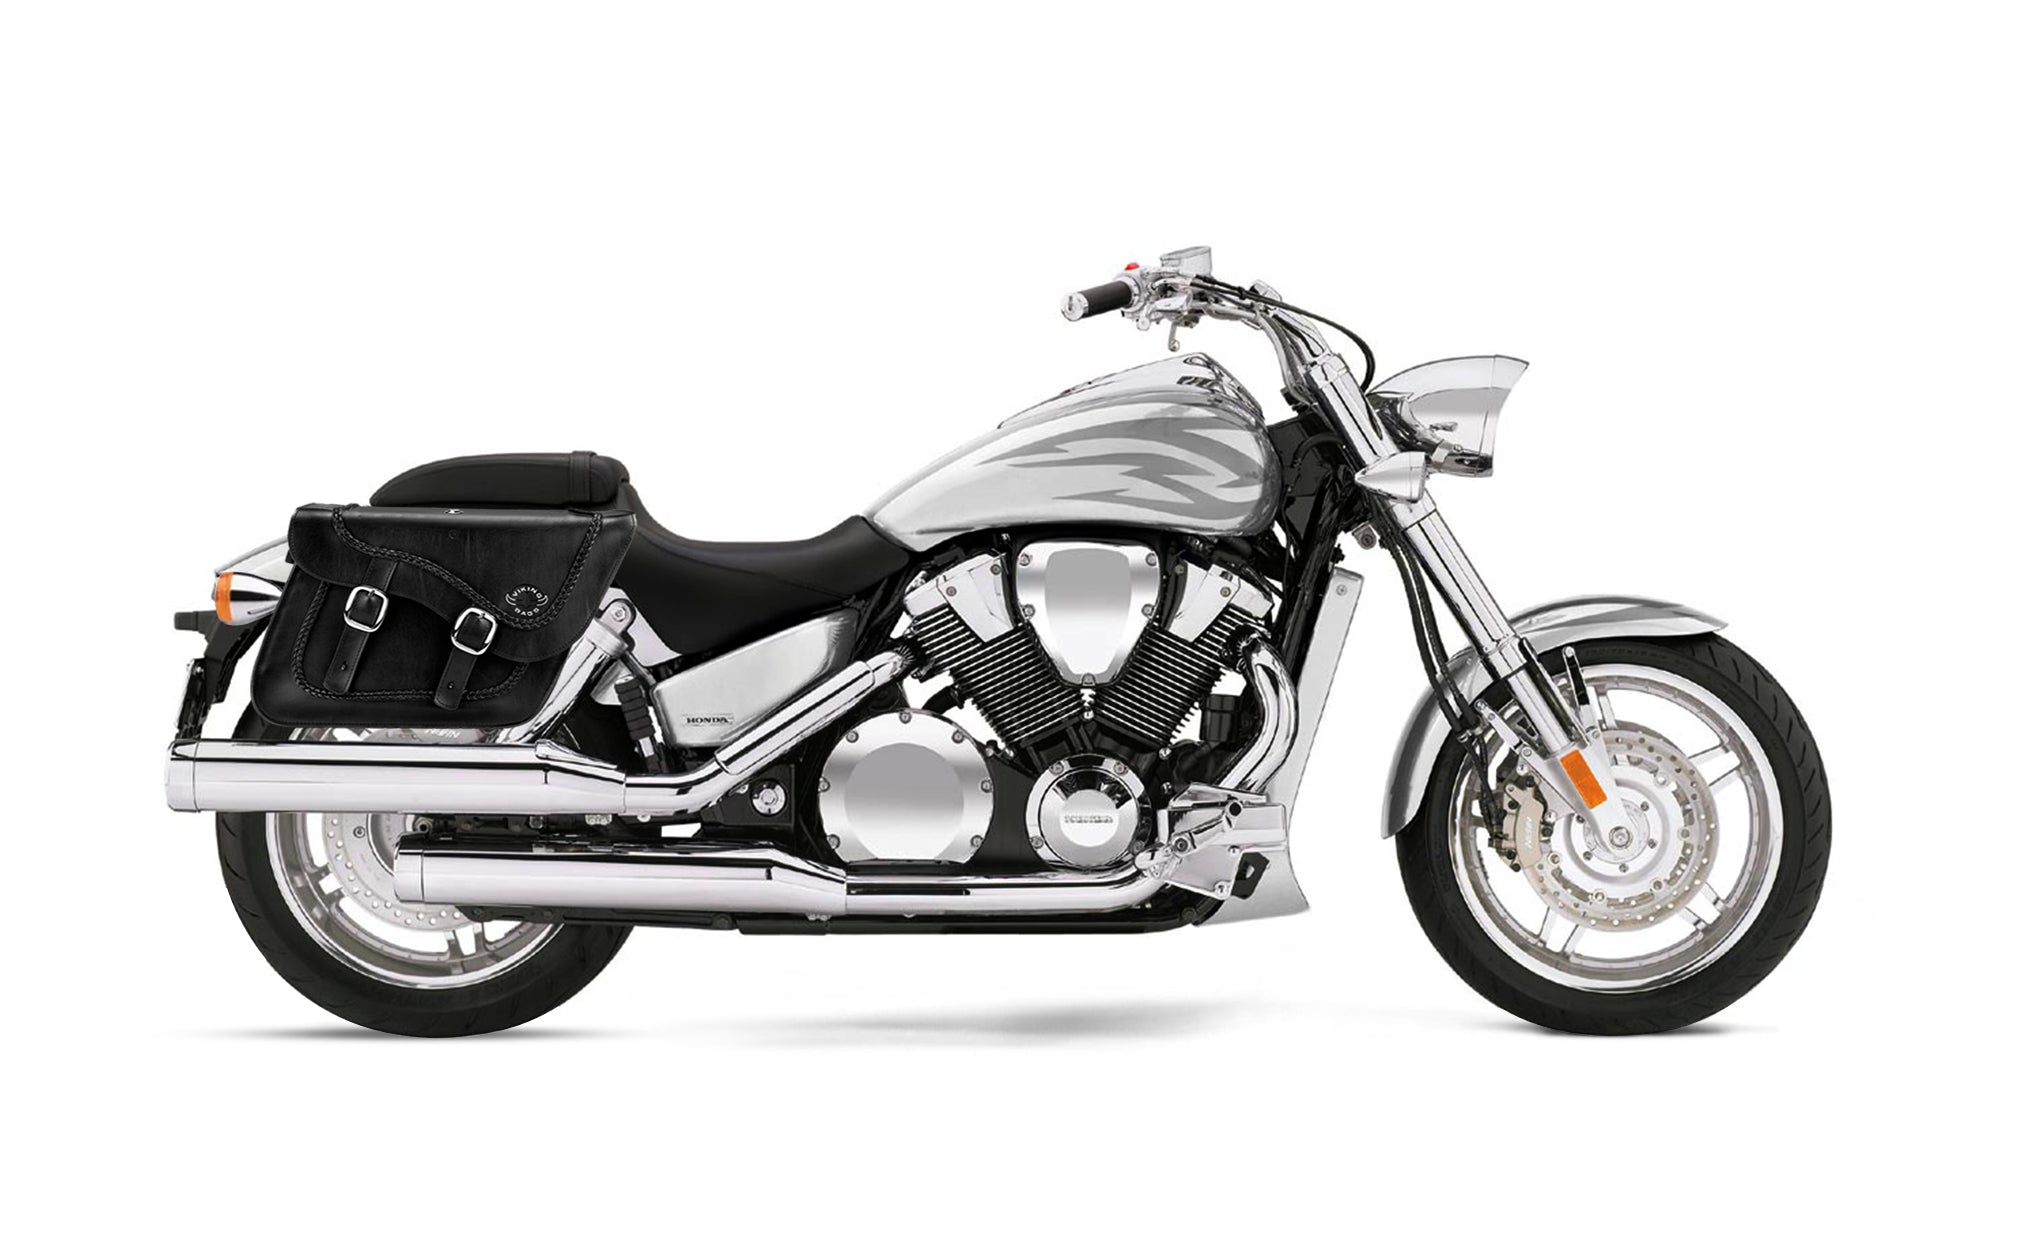 Viking Americano Honda Vtx 1800 F Braided Large Leather Motorcycle Saddlebags on Bike Photo @expand